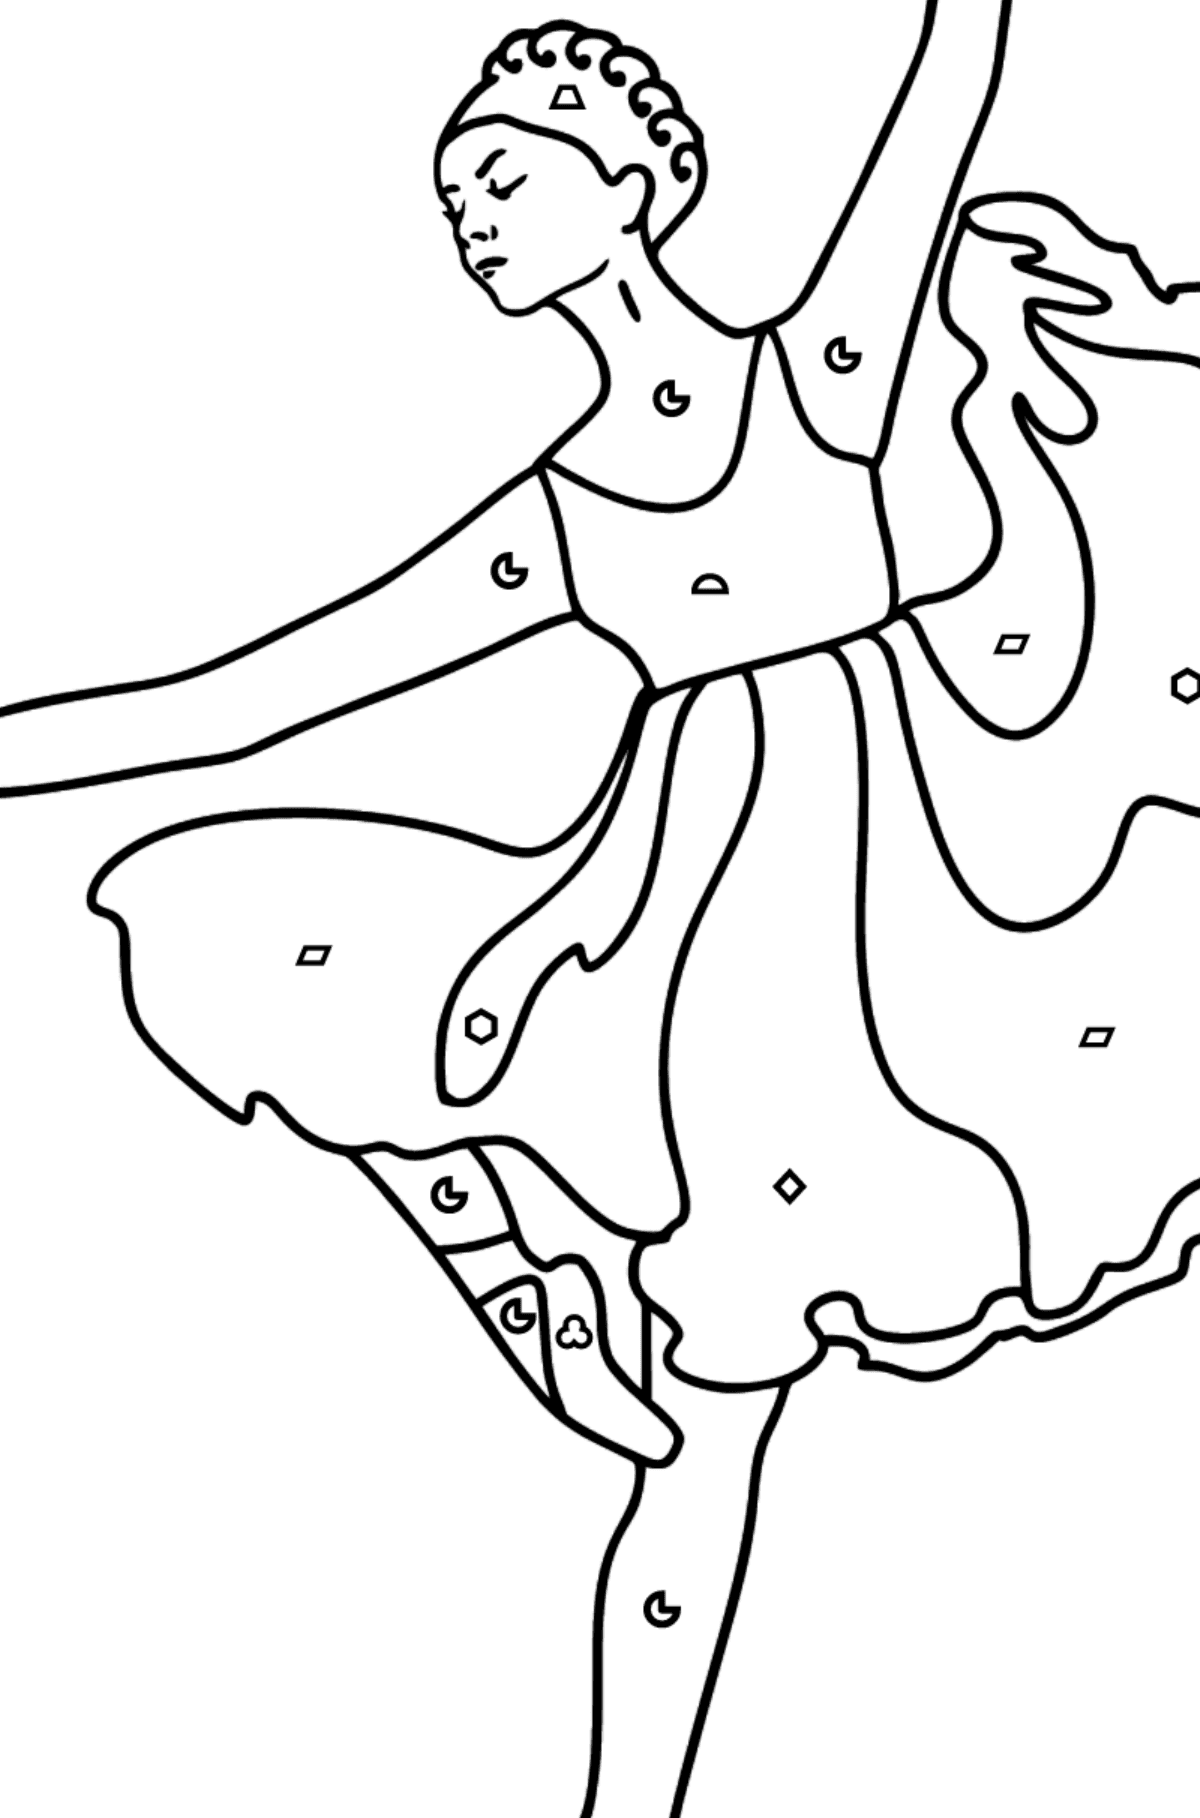 Dibujo para colorear - Bailarina con vestido lila - Colorear por Formas Geométricas para Niños